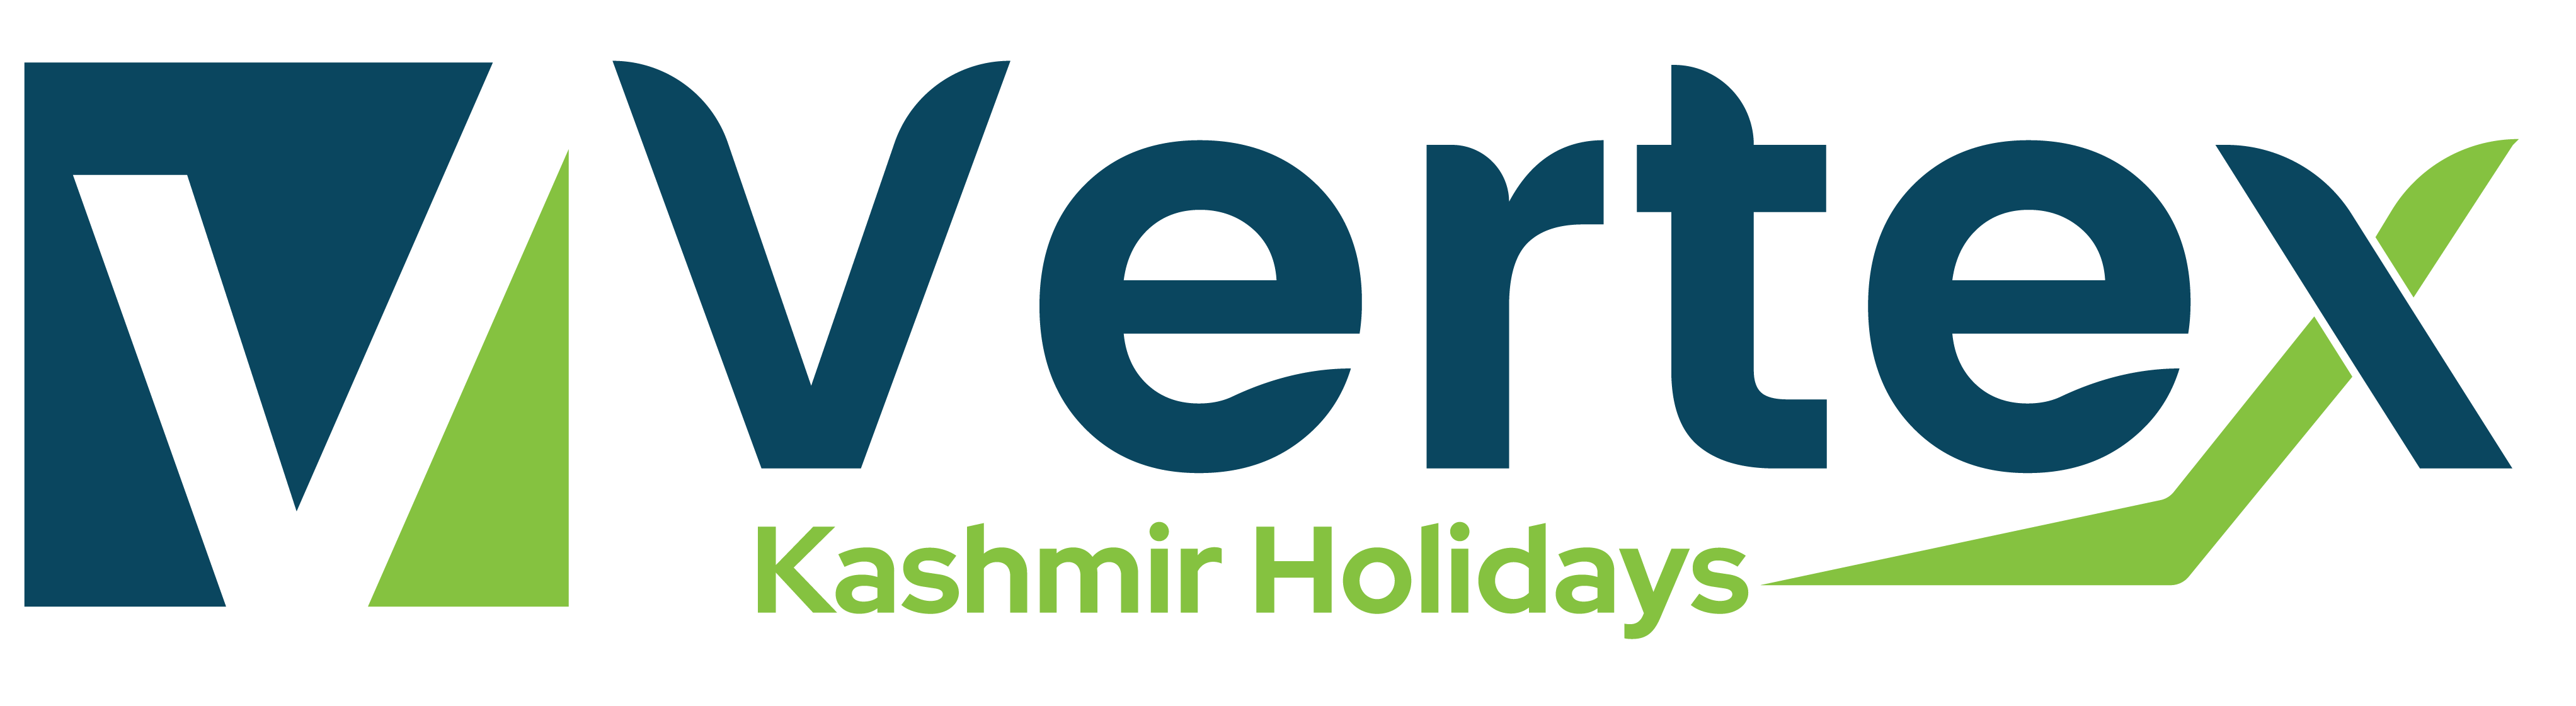 Vertex Kashmir Holidays